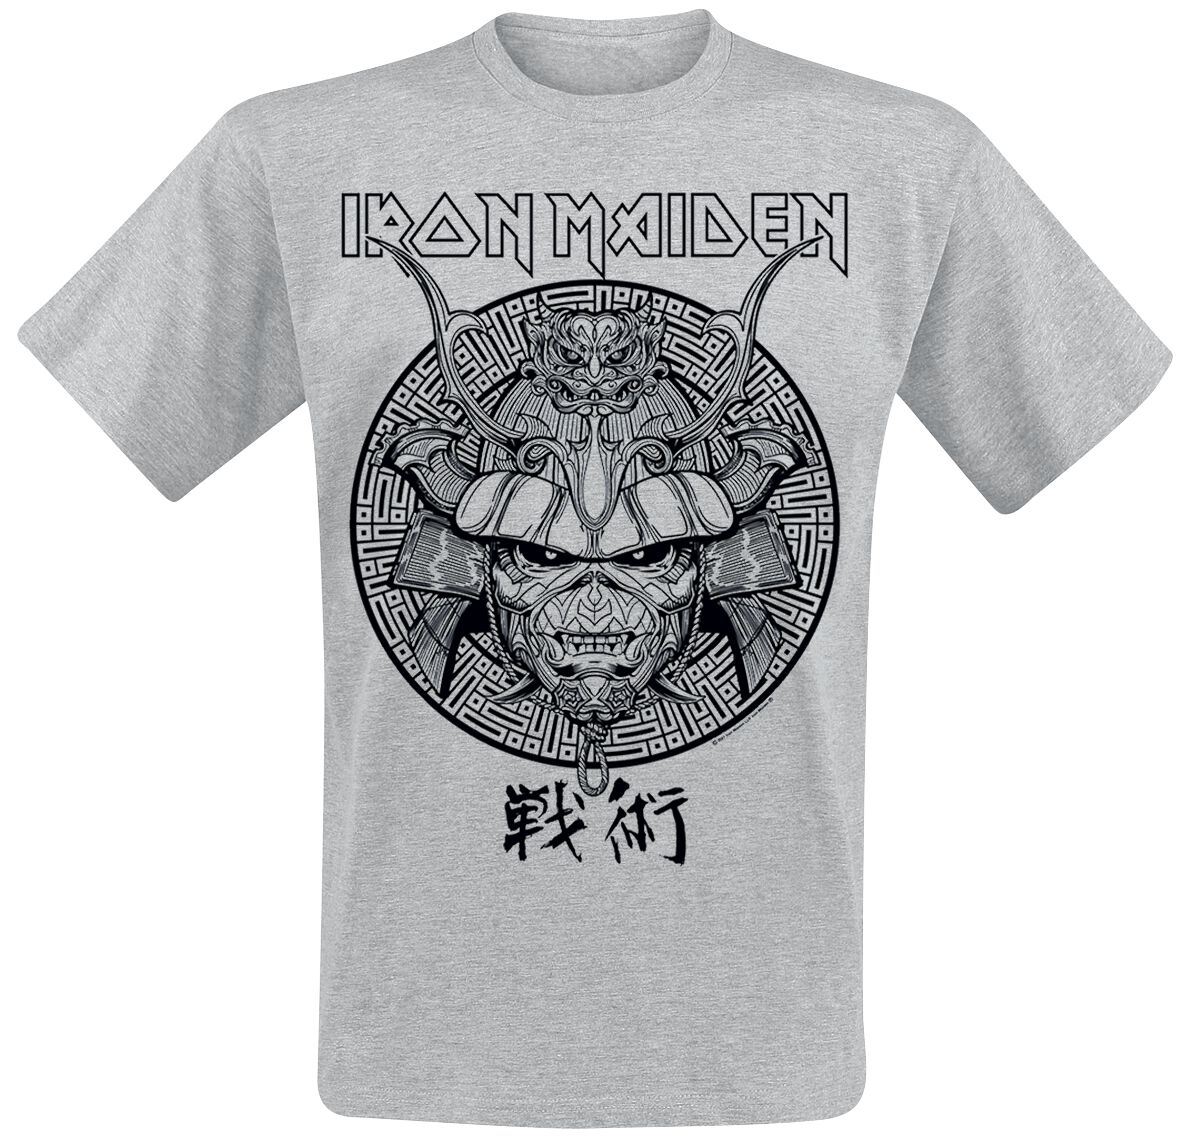 Iron Maiden T-Shirt - Samurai Eddie Black Graphic - S bis XXL - für Männer - Größe XL - grau  - Lizenziertes Merchandise!